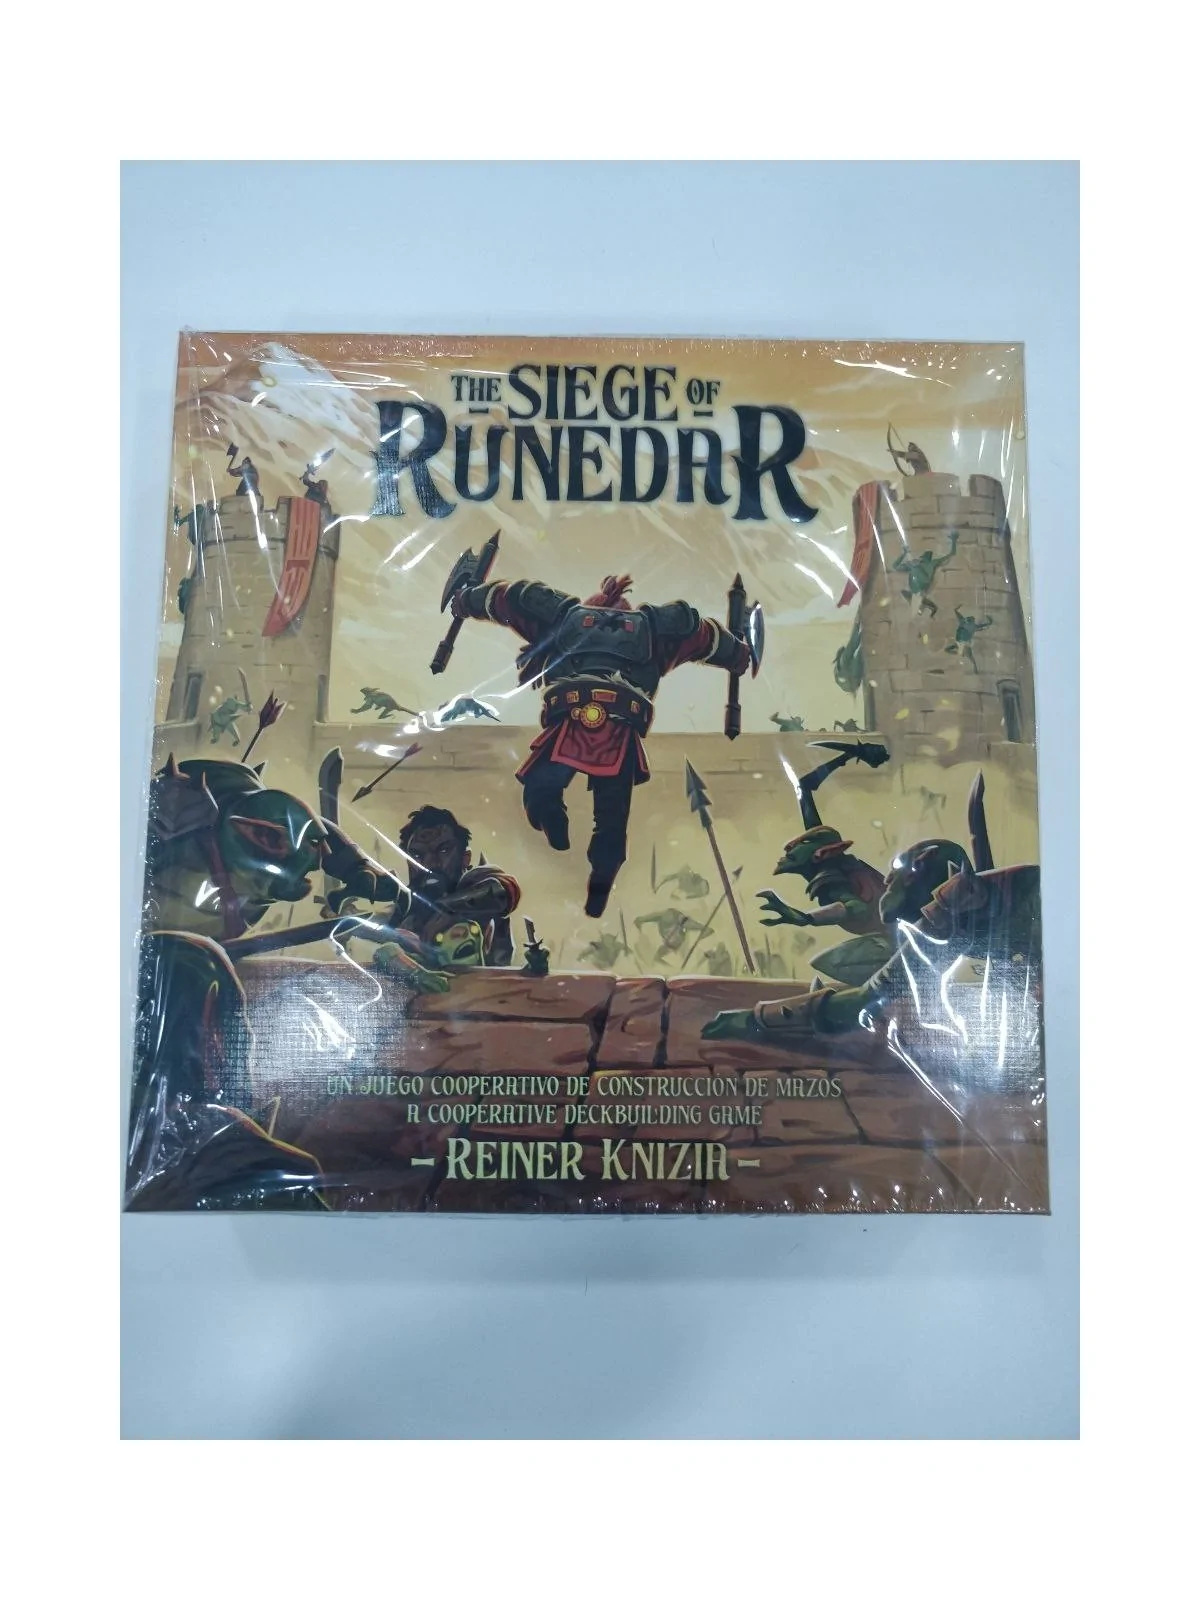 Comprar The Siege of Runedar [SEGUNDA MANO] barato al mejor precio 25,